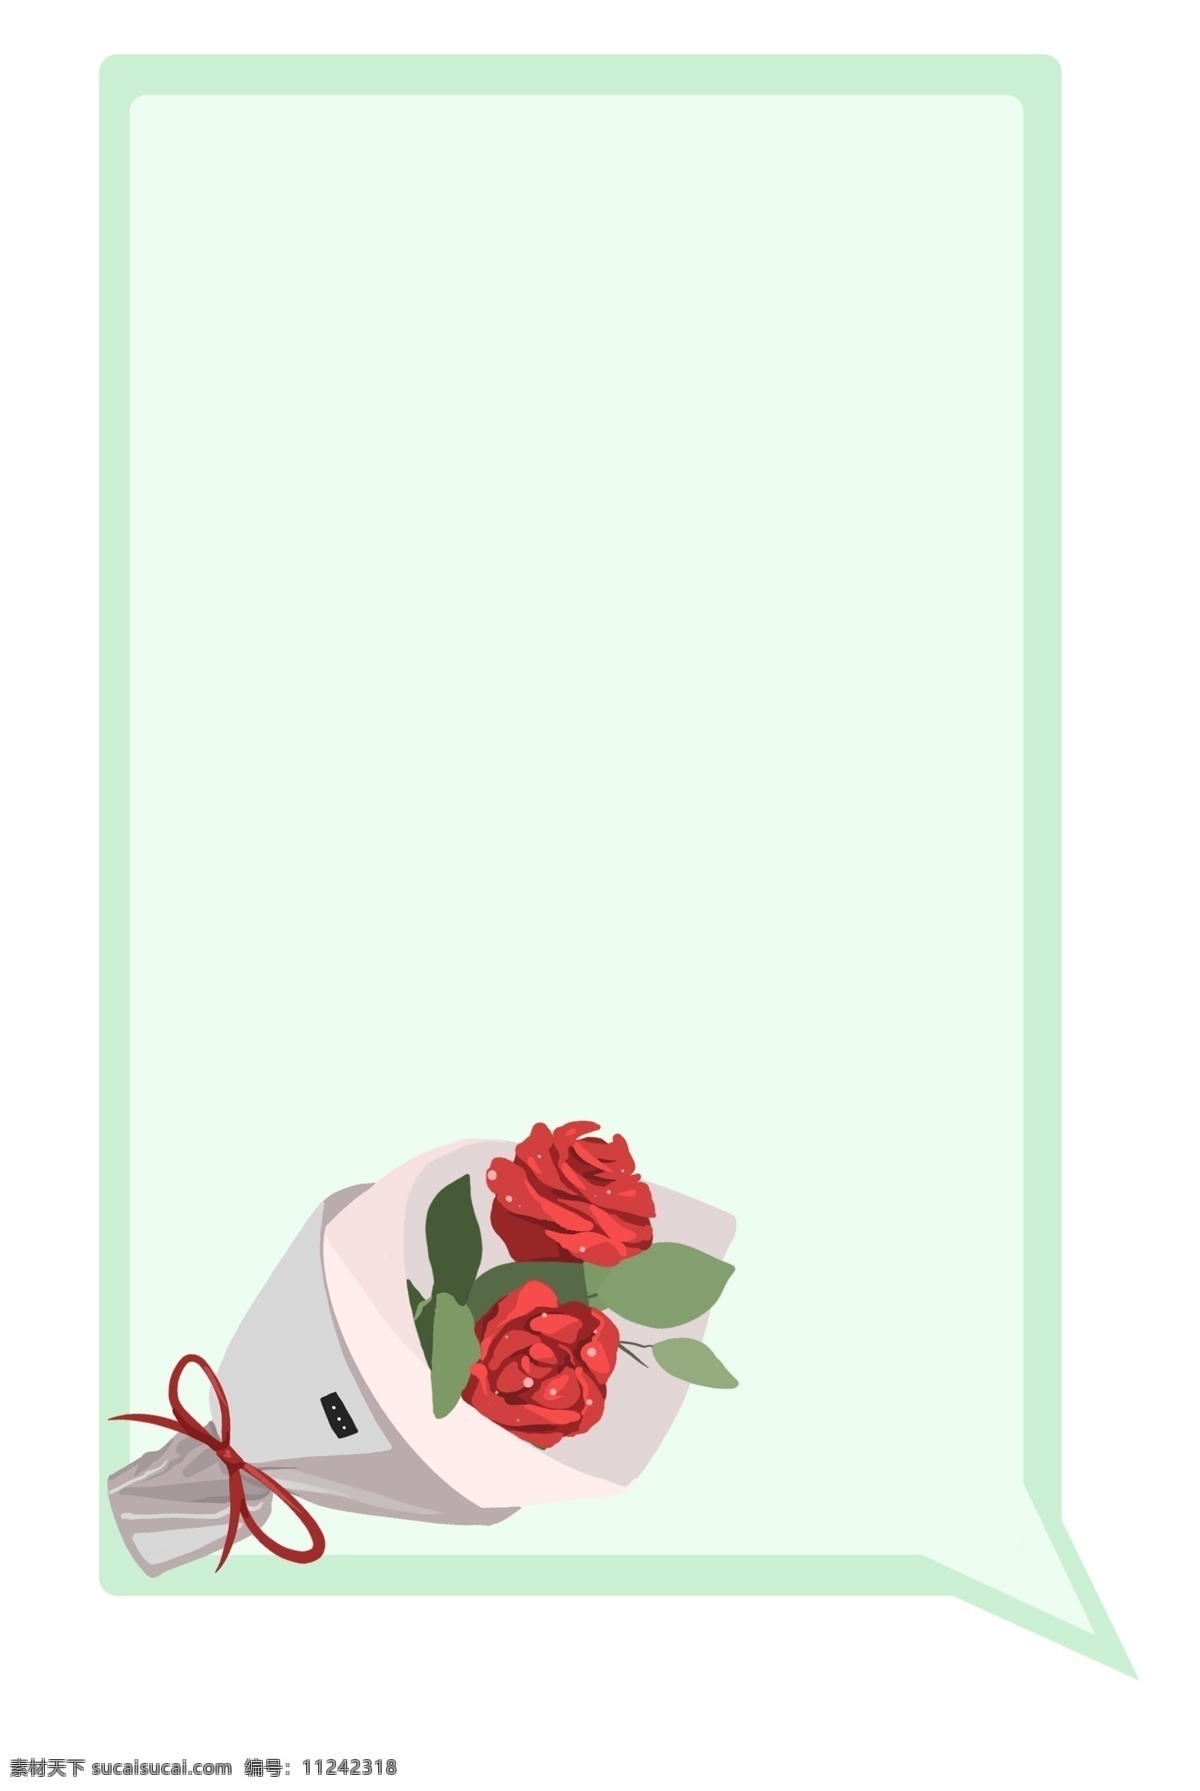 玫瑰 花束 对话框 插画 爱情对话框 红玫瑰对话框 花束对话框 玫瑰花